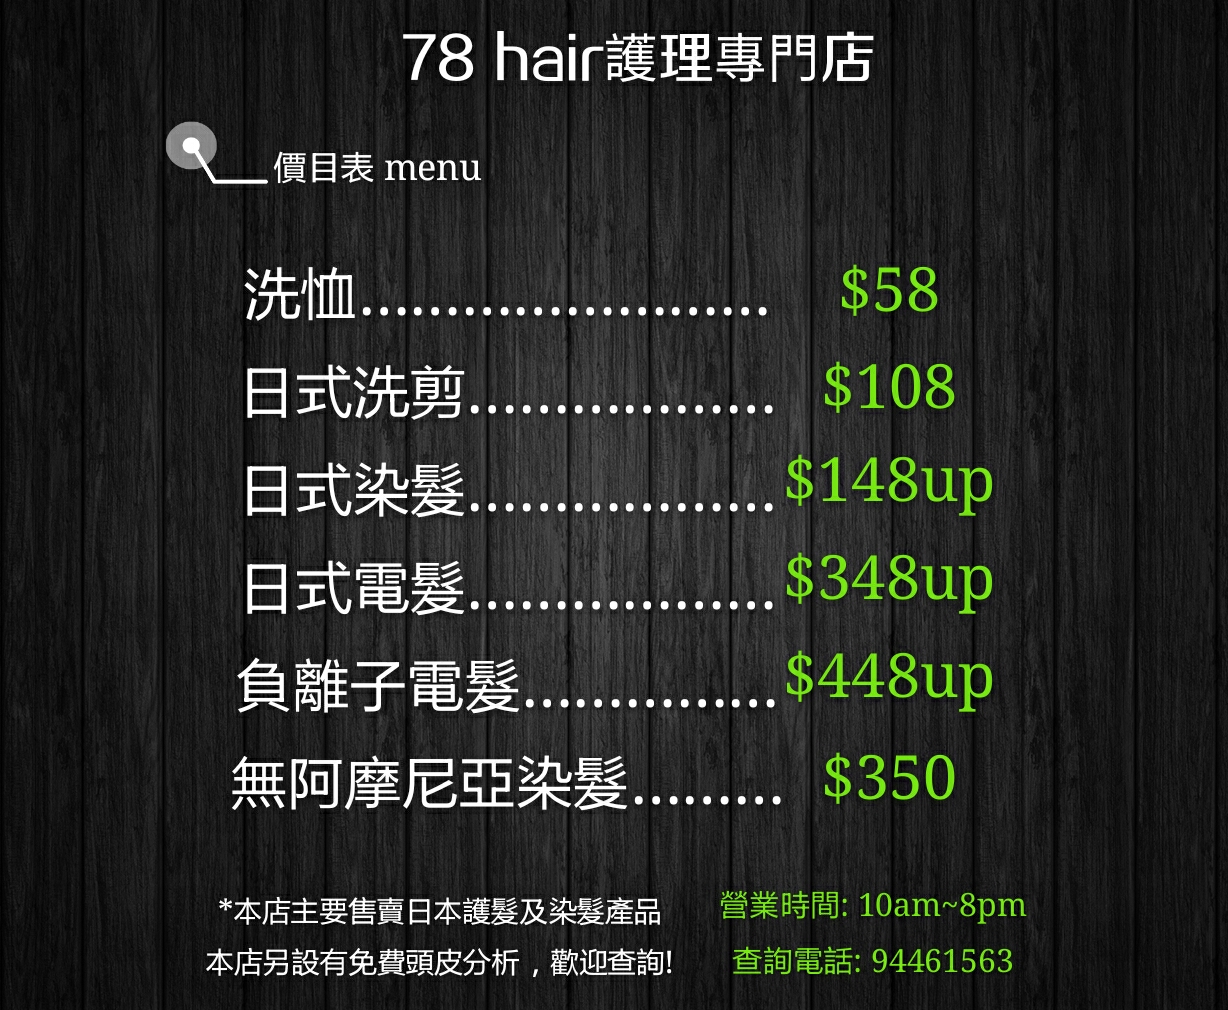 香港美髮網 HK Hair Salon 髮型屋Salon / 髮型師: 78Hair護理專門店